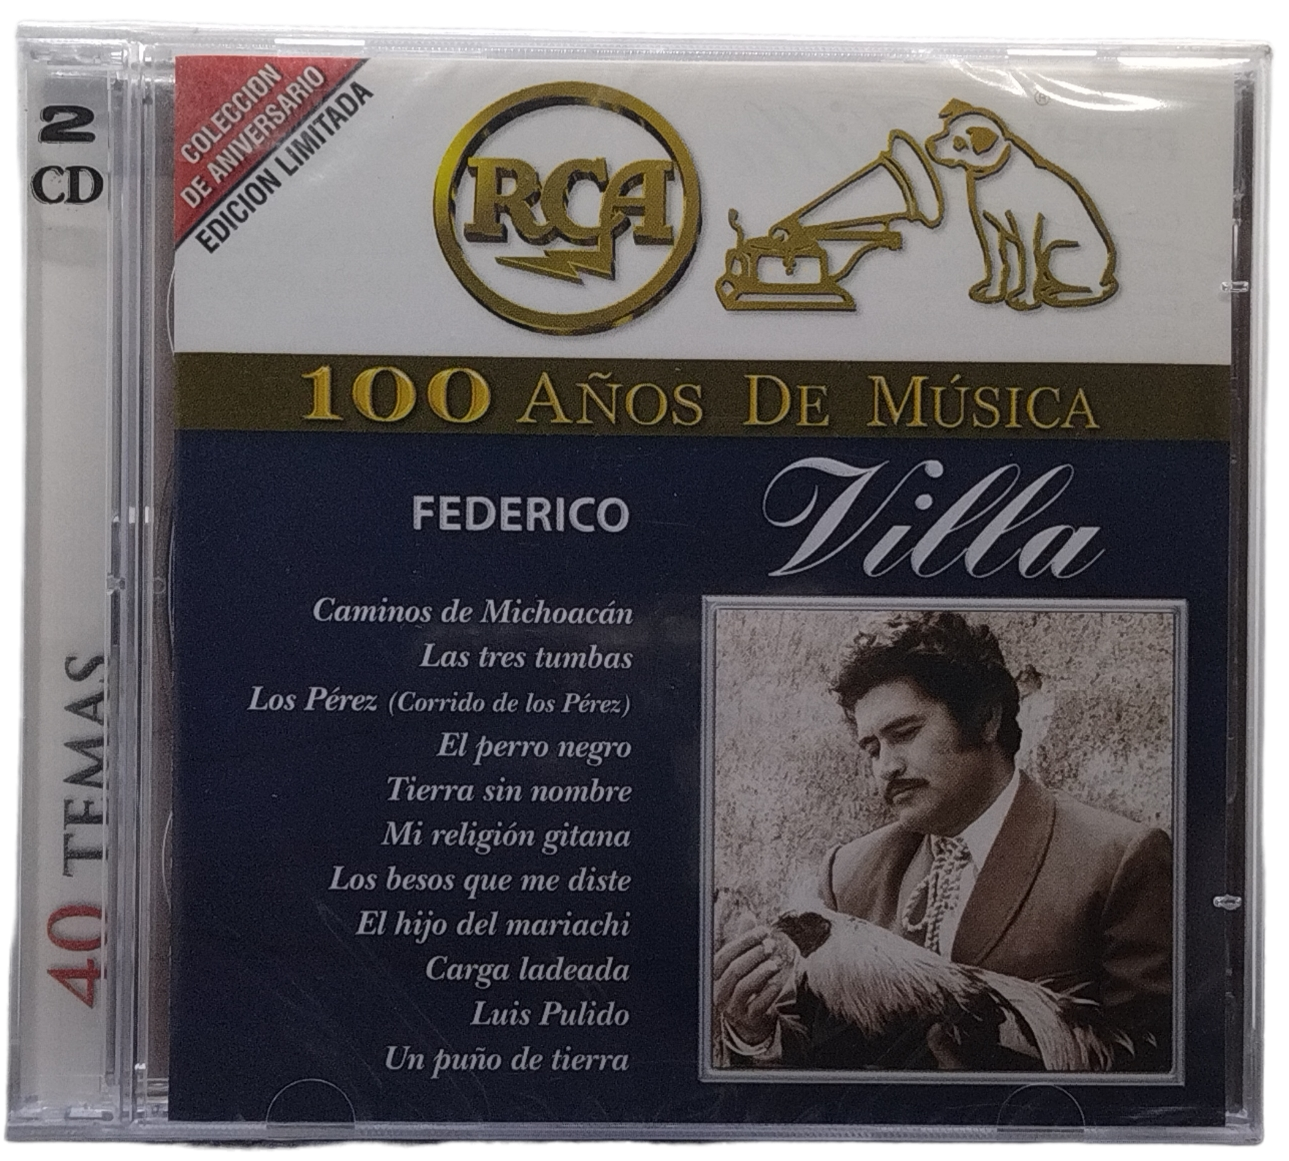 federico villa  - 100 años de musica